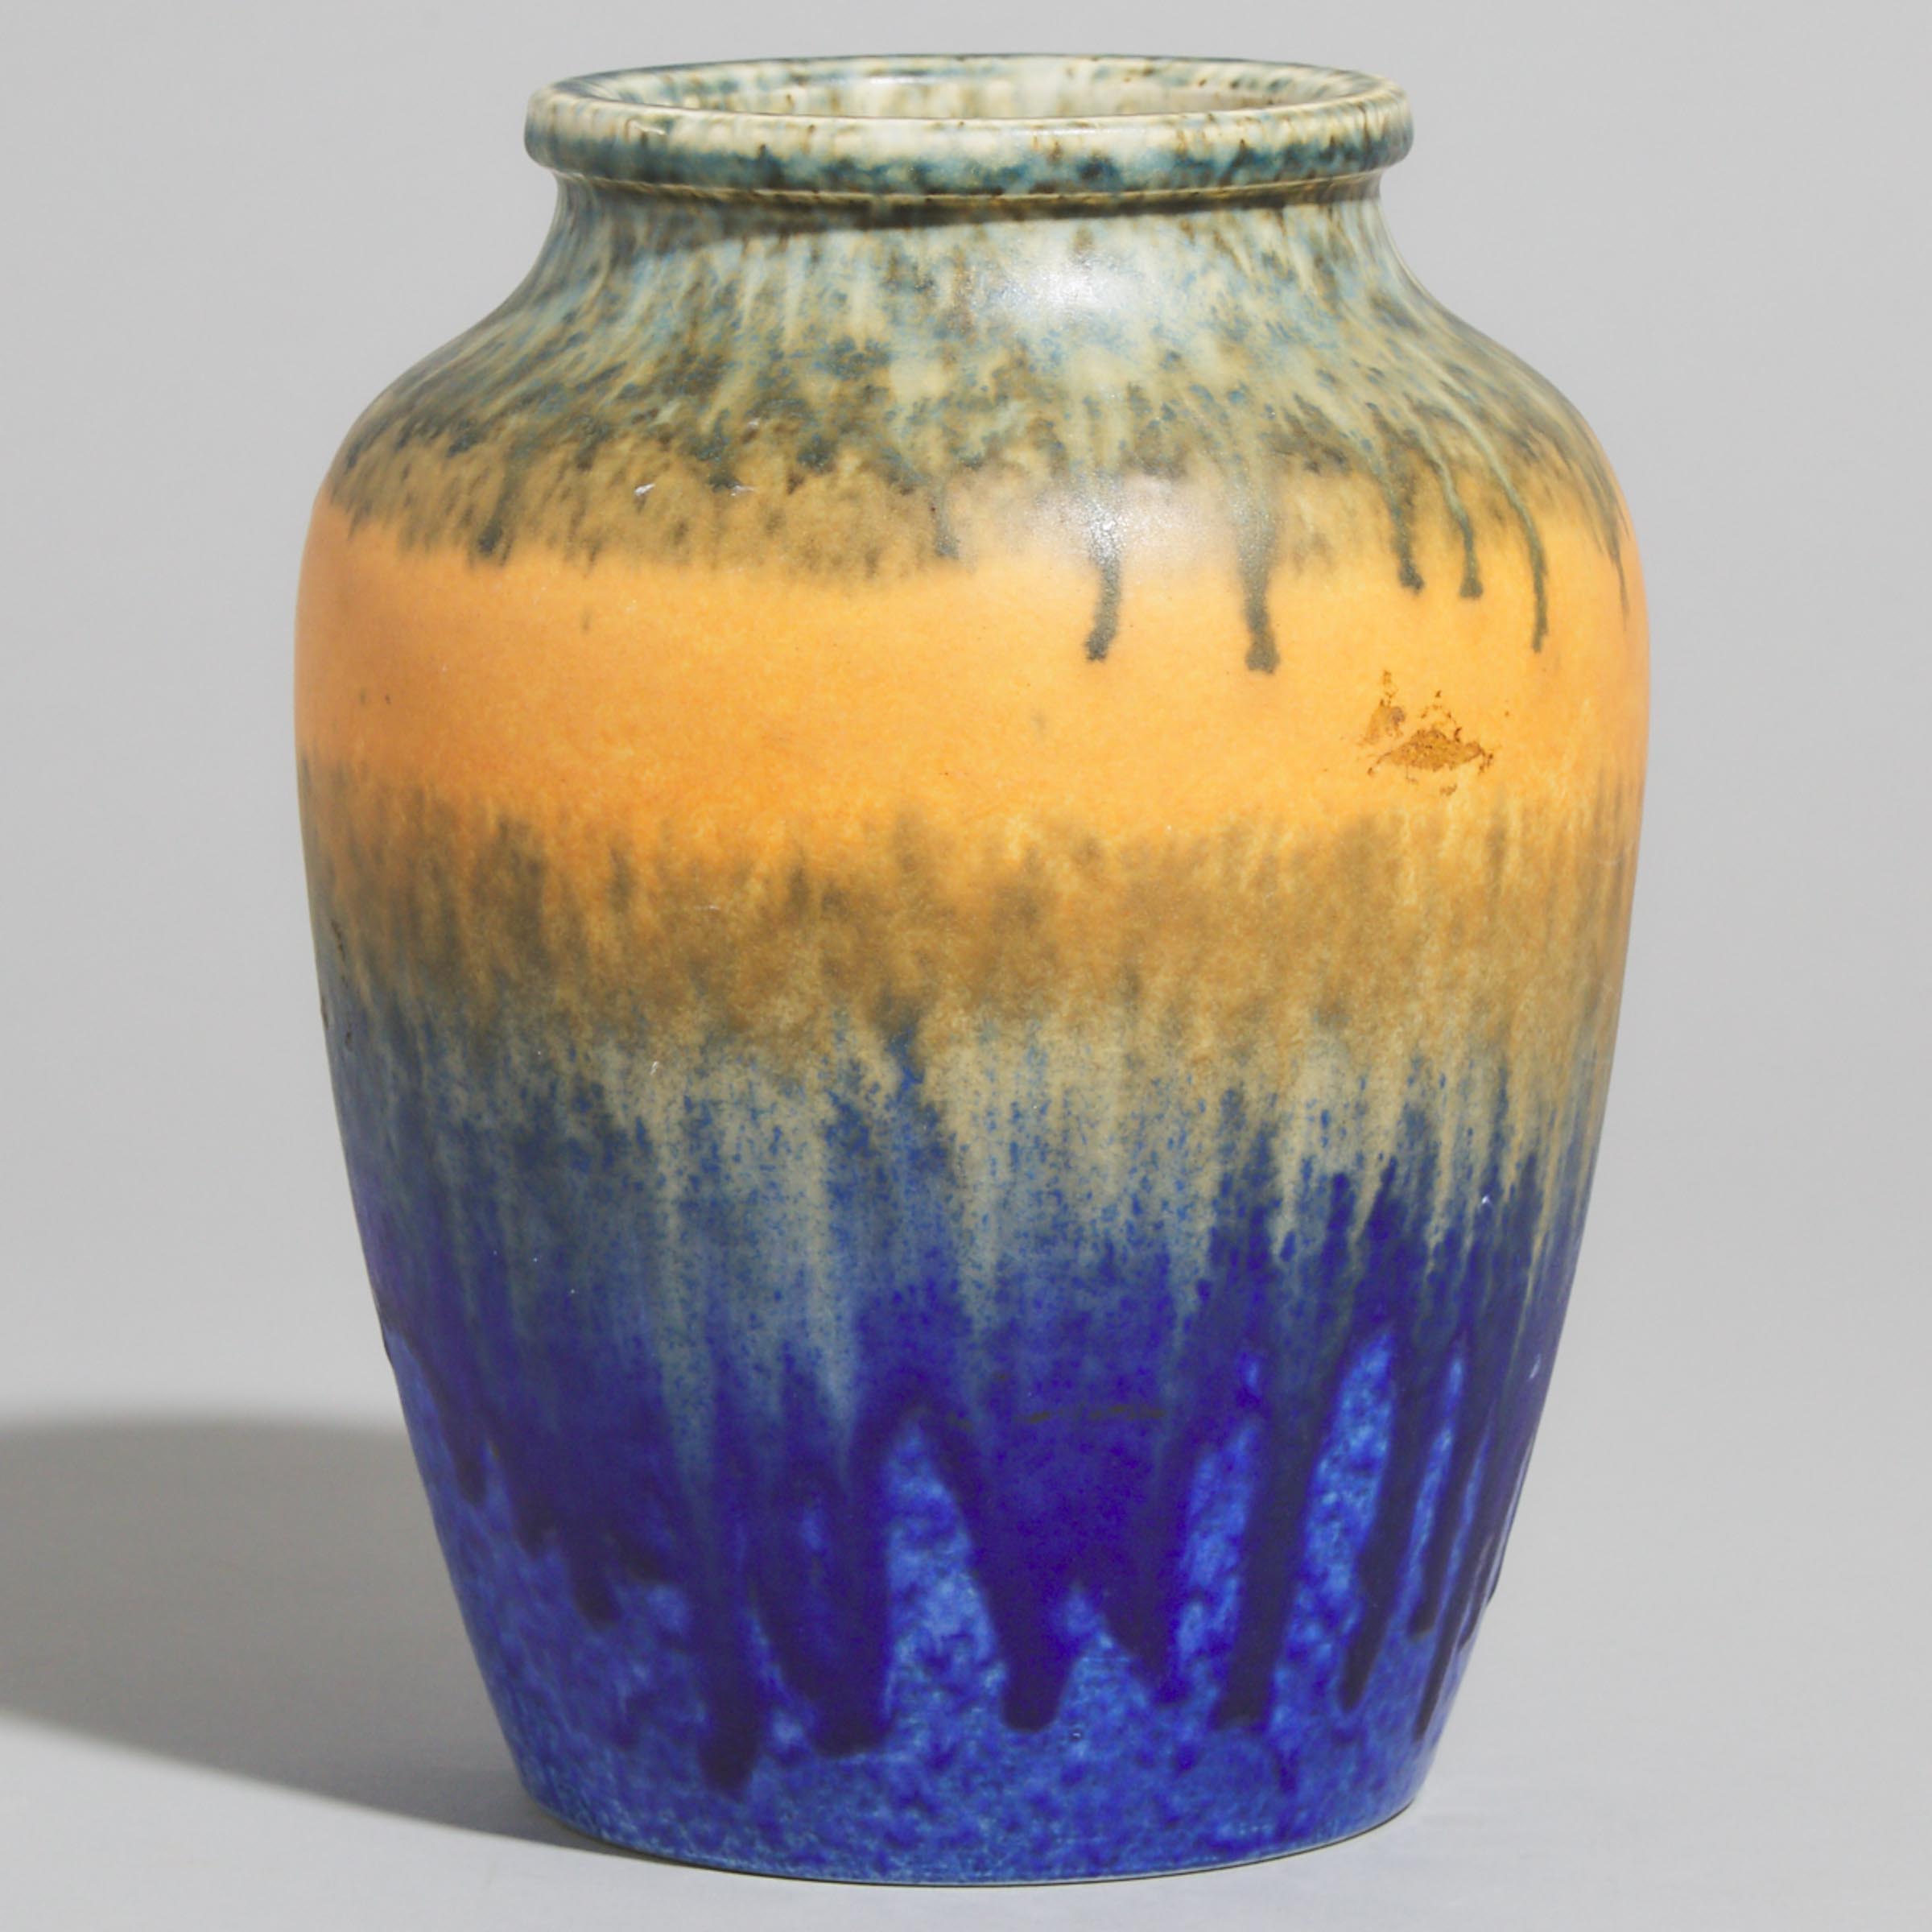 Ruskin Mottled Blue, Orange, and Green Glazed Vase, 1930